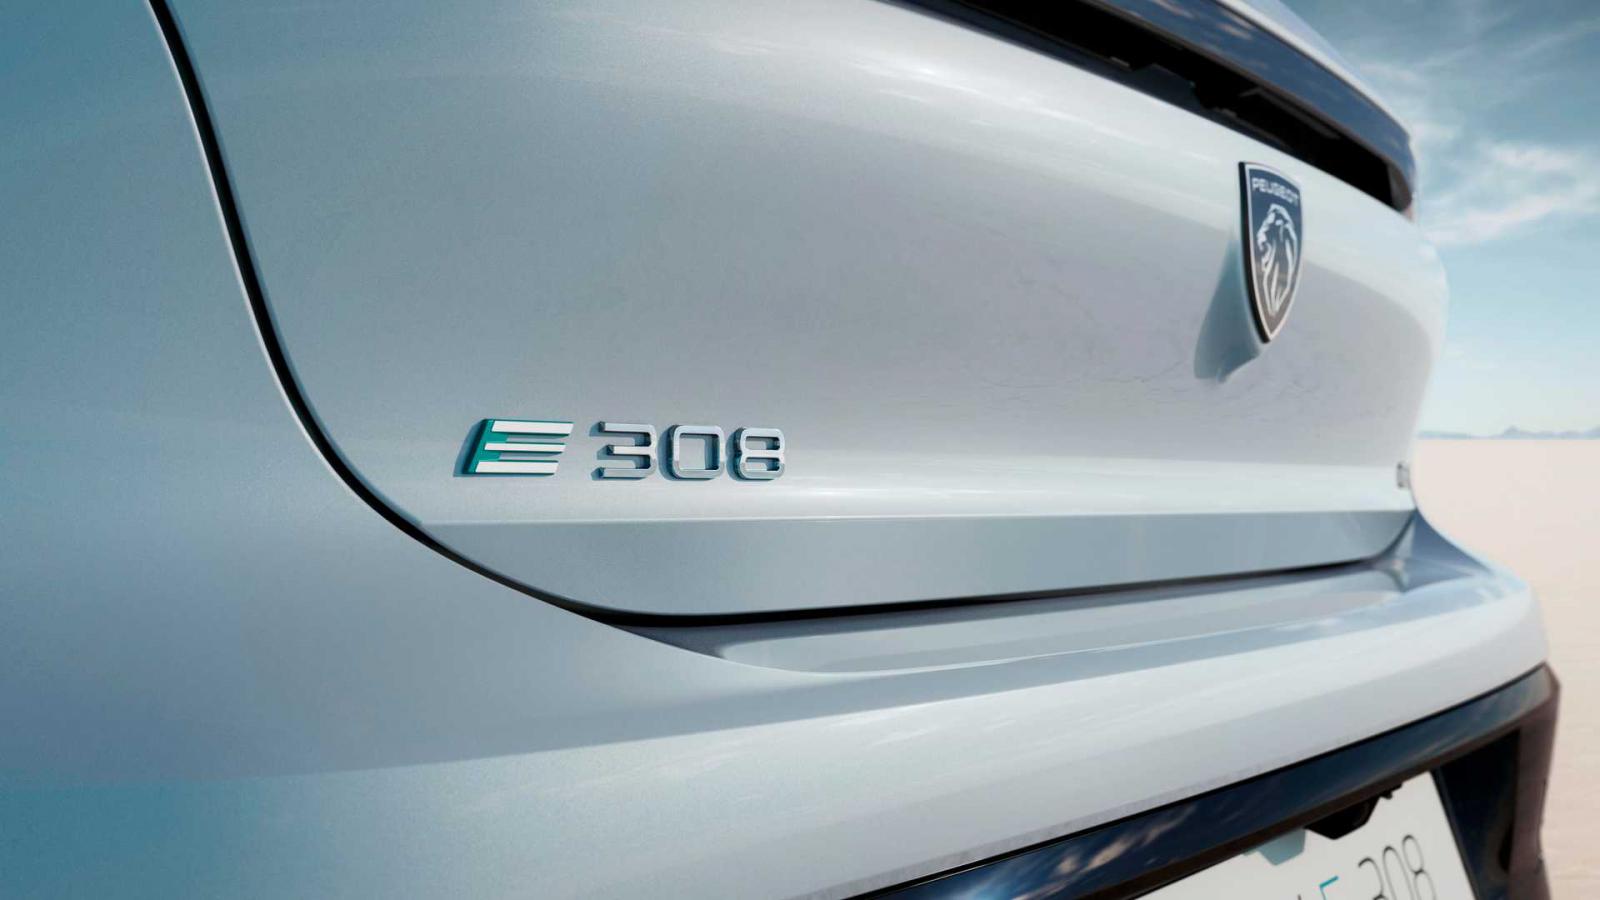 Ηλεκτρικό Peugeot E-308: Πρεμιέρα με 156 ίππους